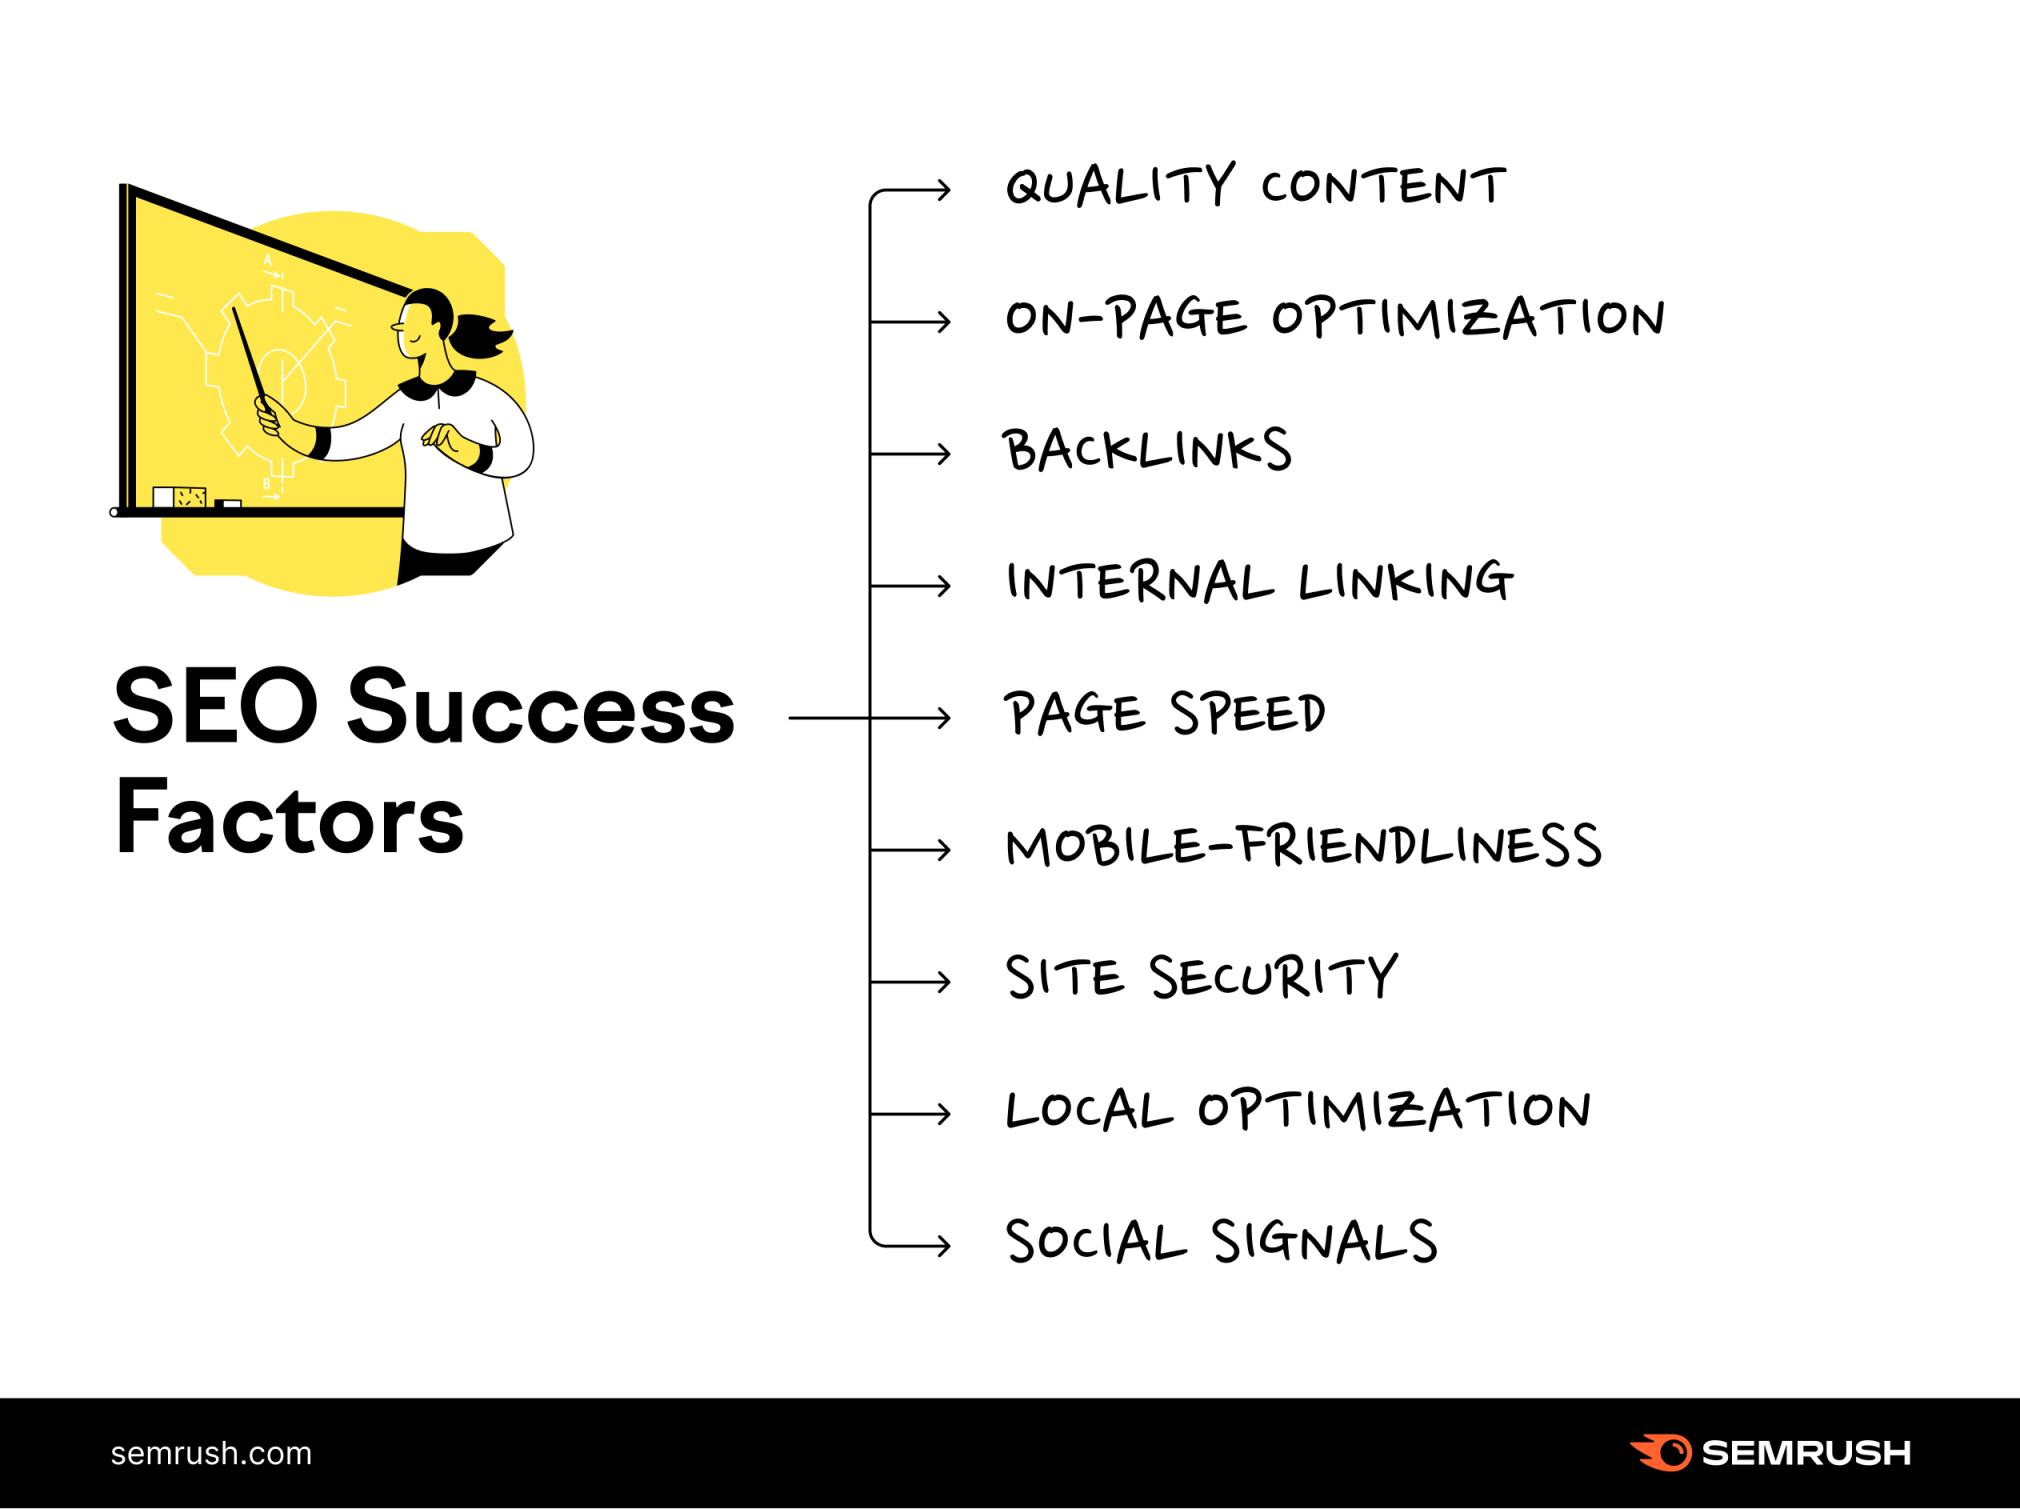 SEO success factors